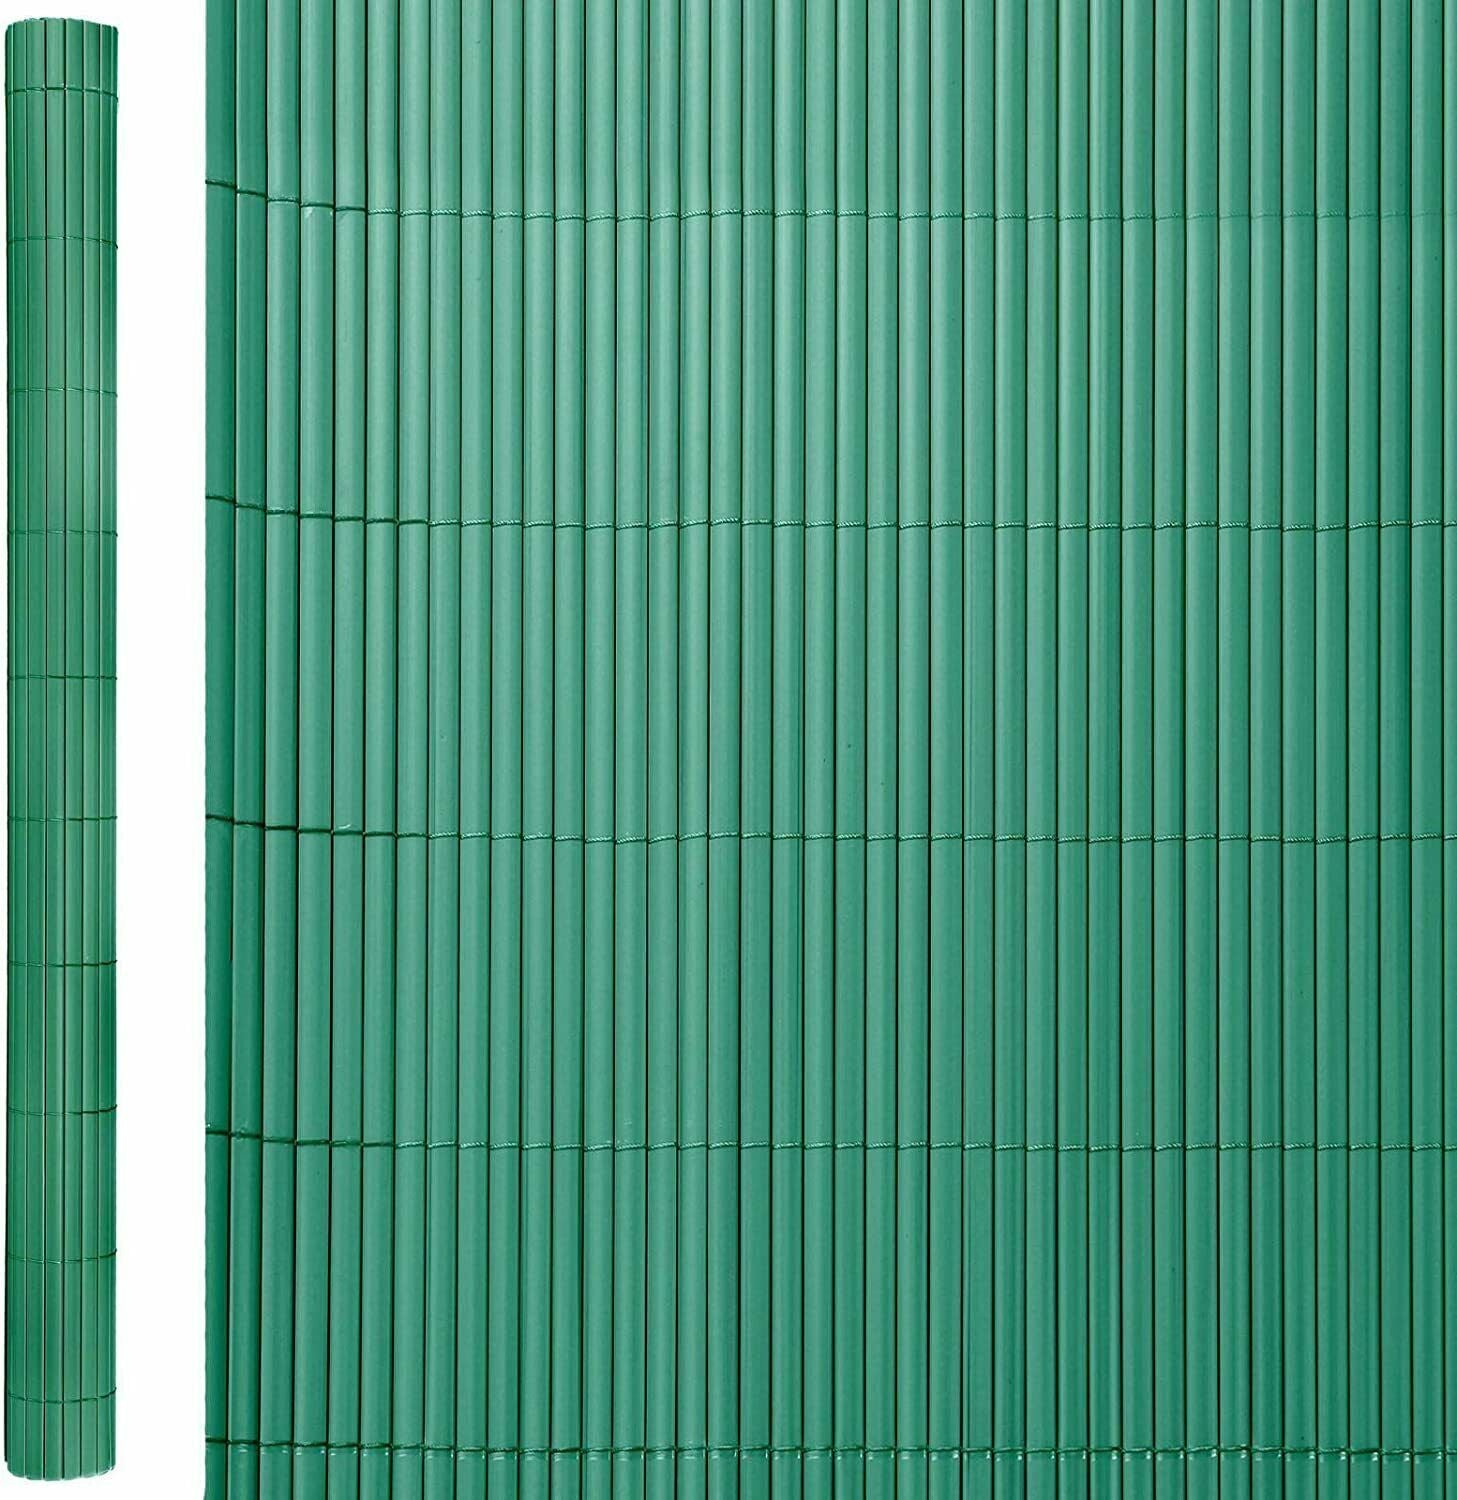 Cañizo Artificial de ocultación para jardín, Verde, 300x100x20 cm – Maxia  Market